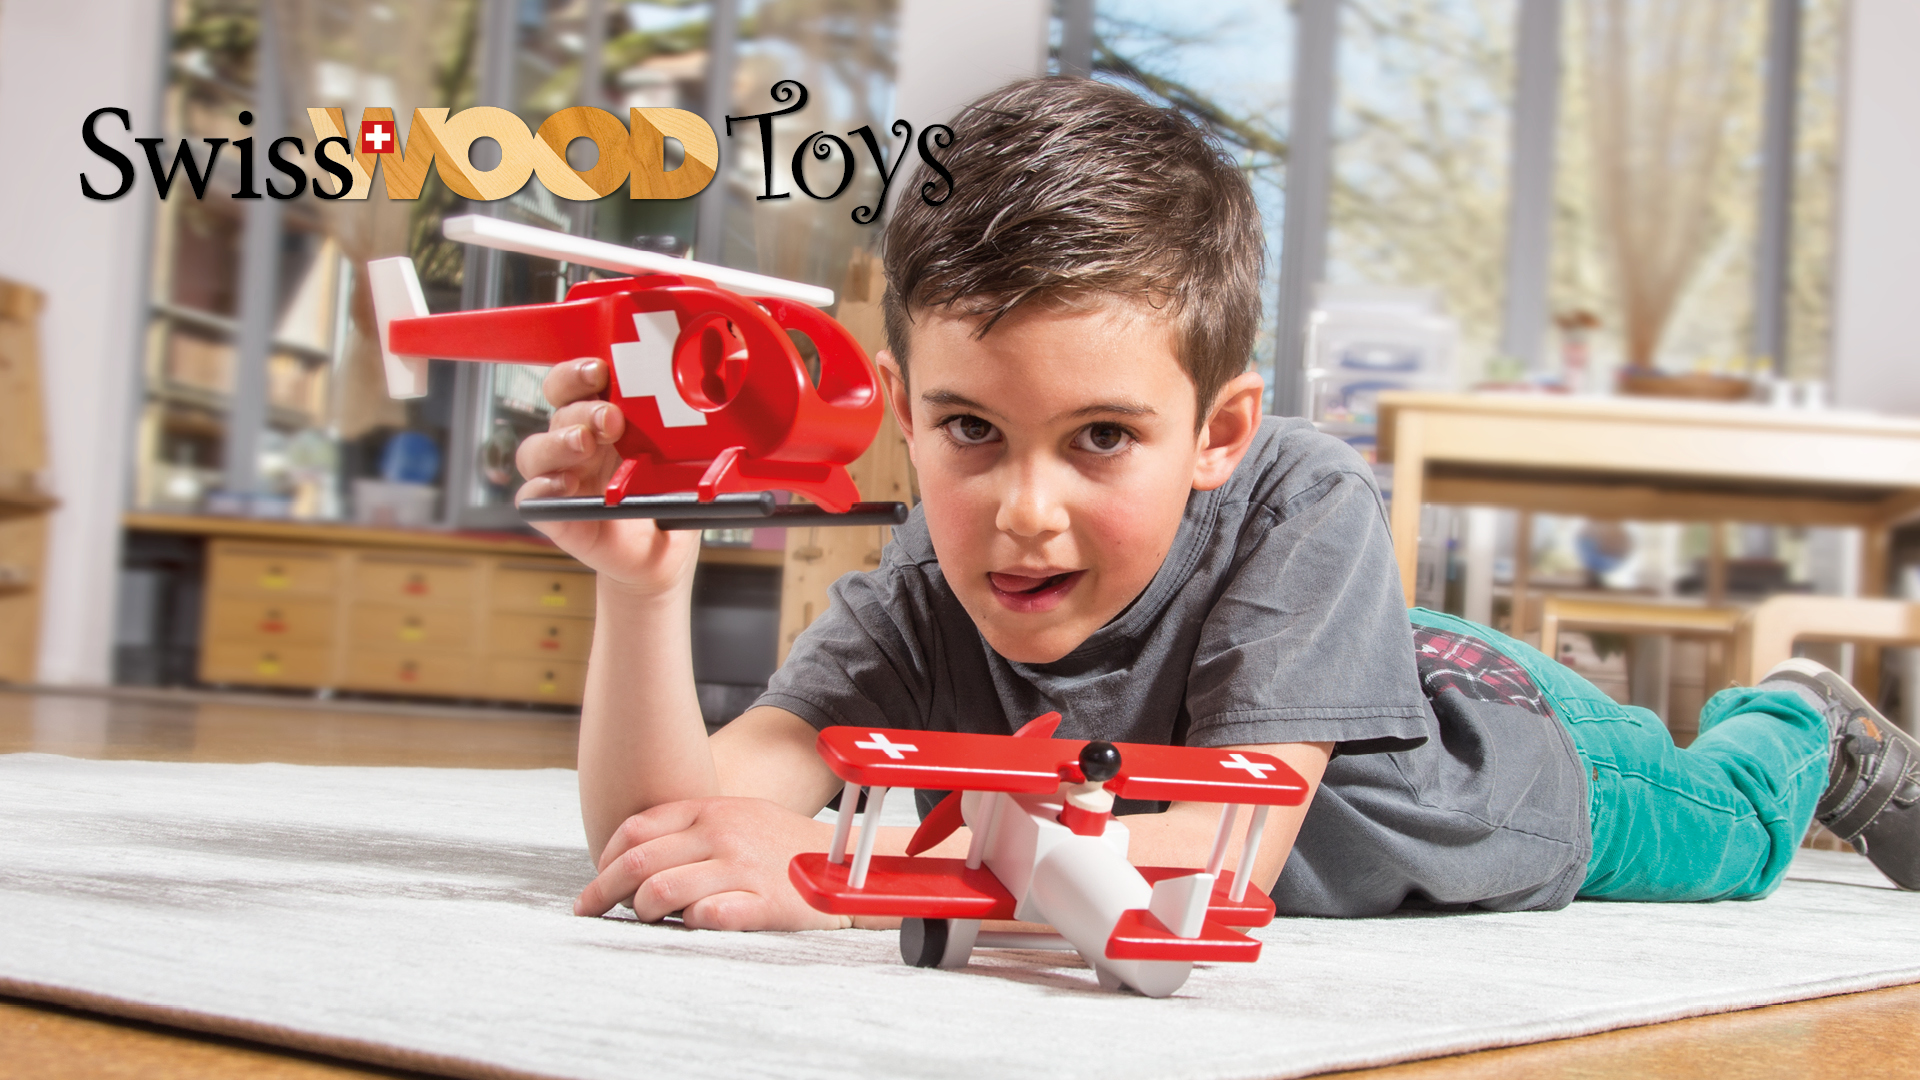 Swiss Wood Toys - Holzspielzeug aus der Schweiz